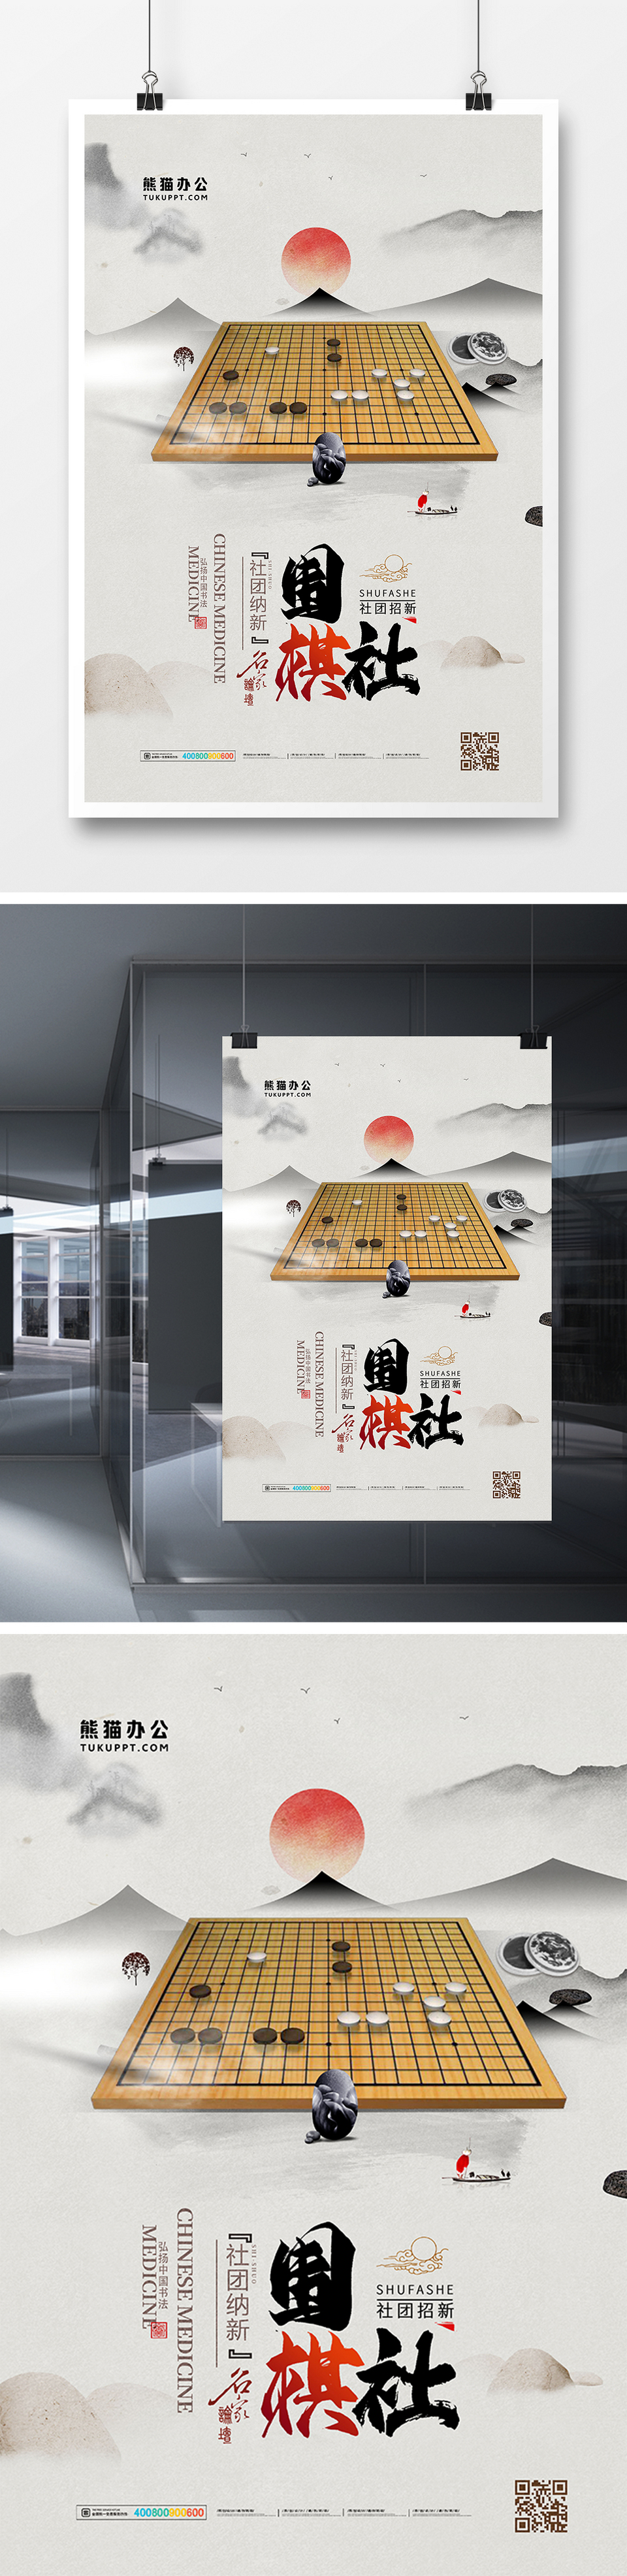 水墨中国风大学社团围棋社招新啦海报设计